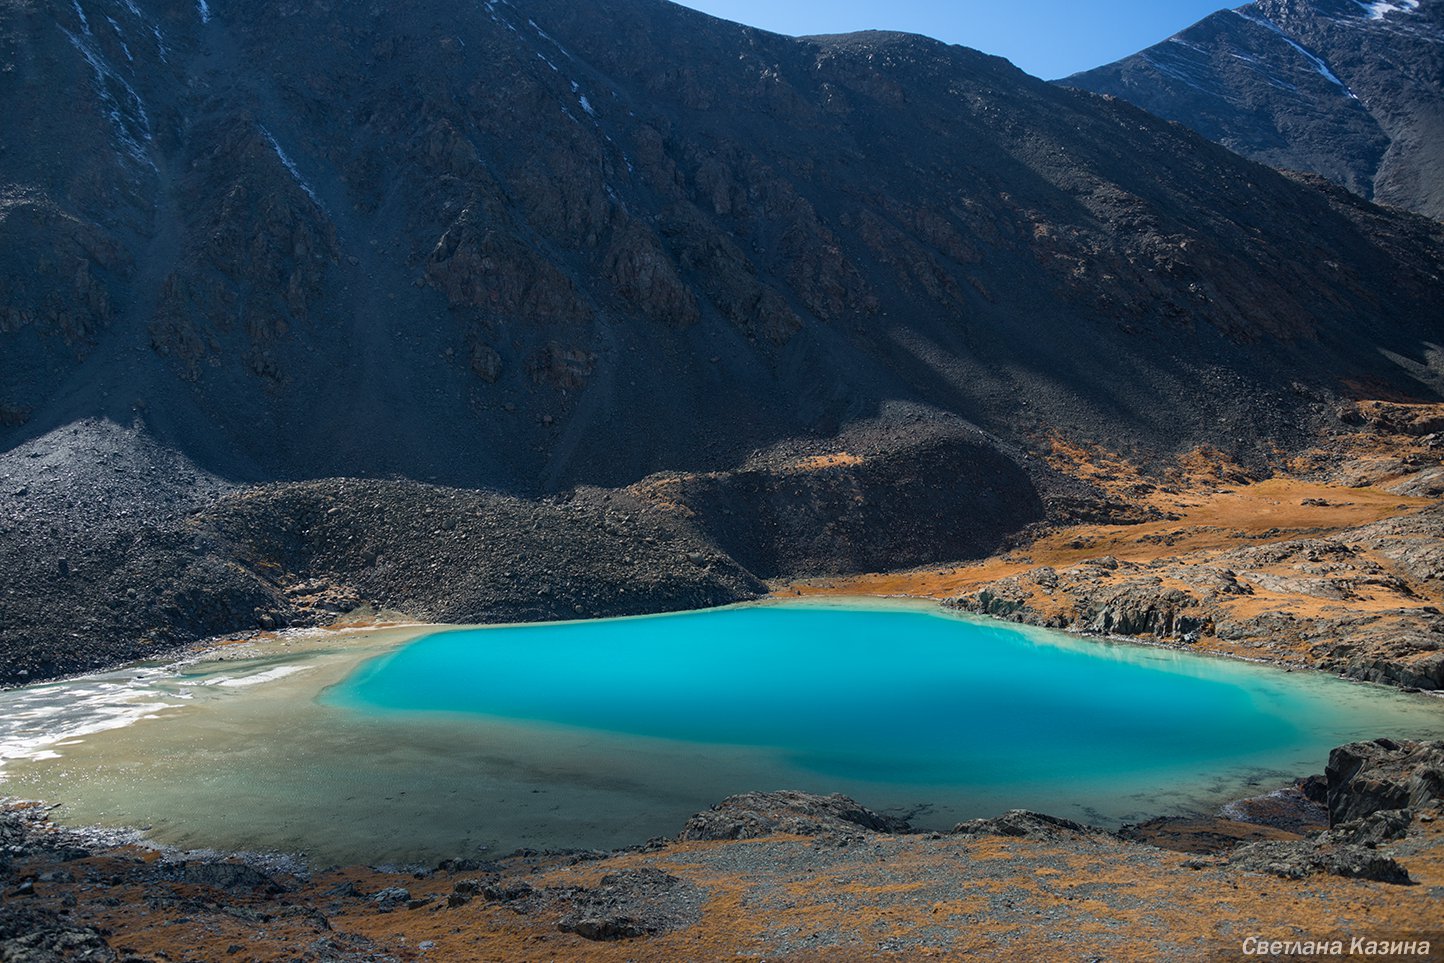 Почему вода в озере бирюзового цвета? — Фото №216676